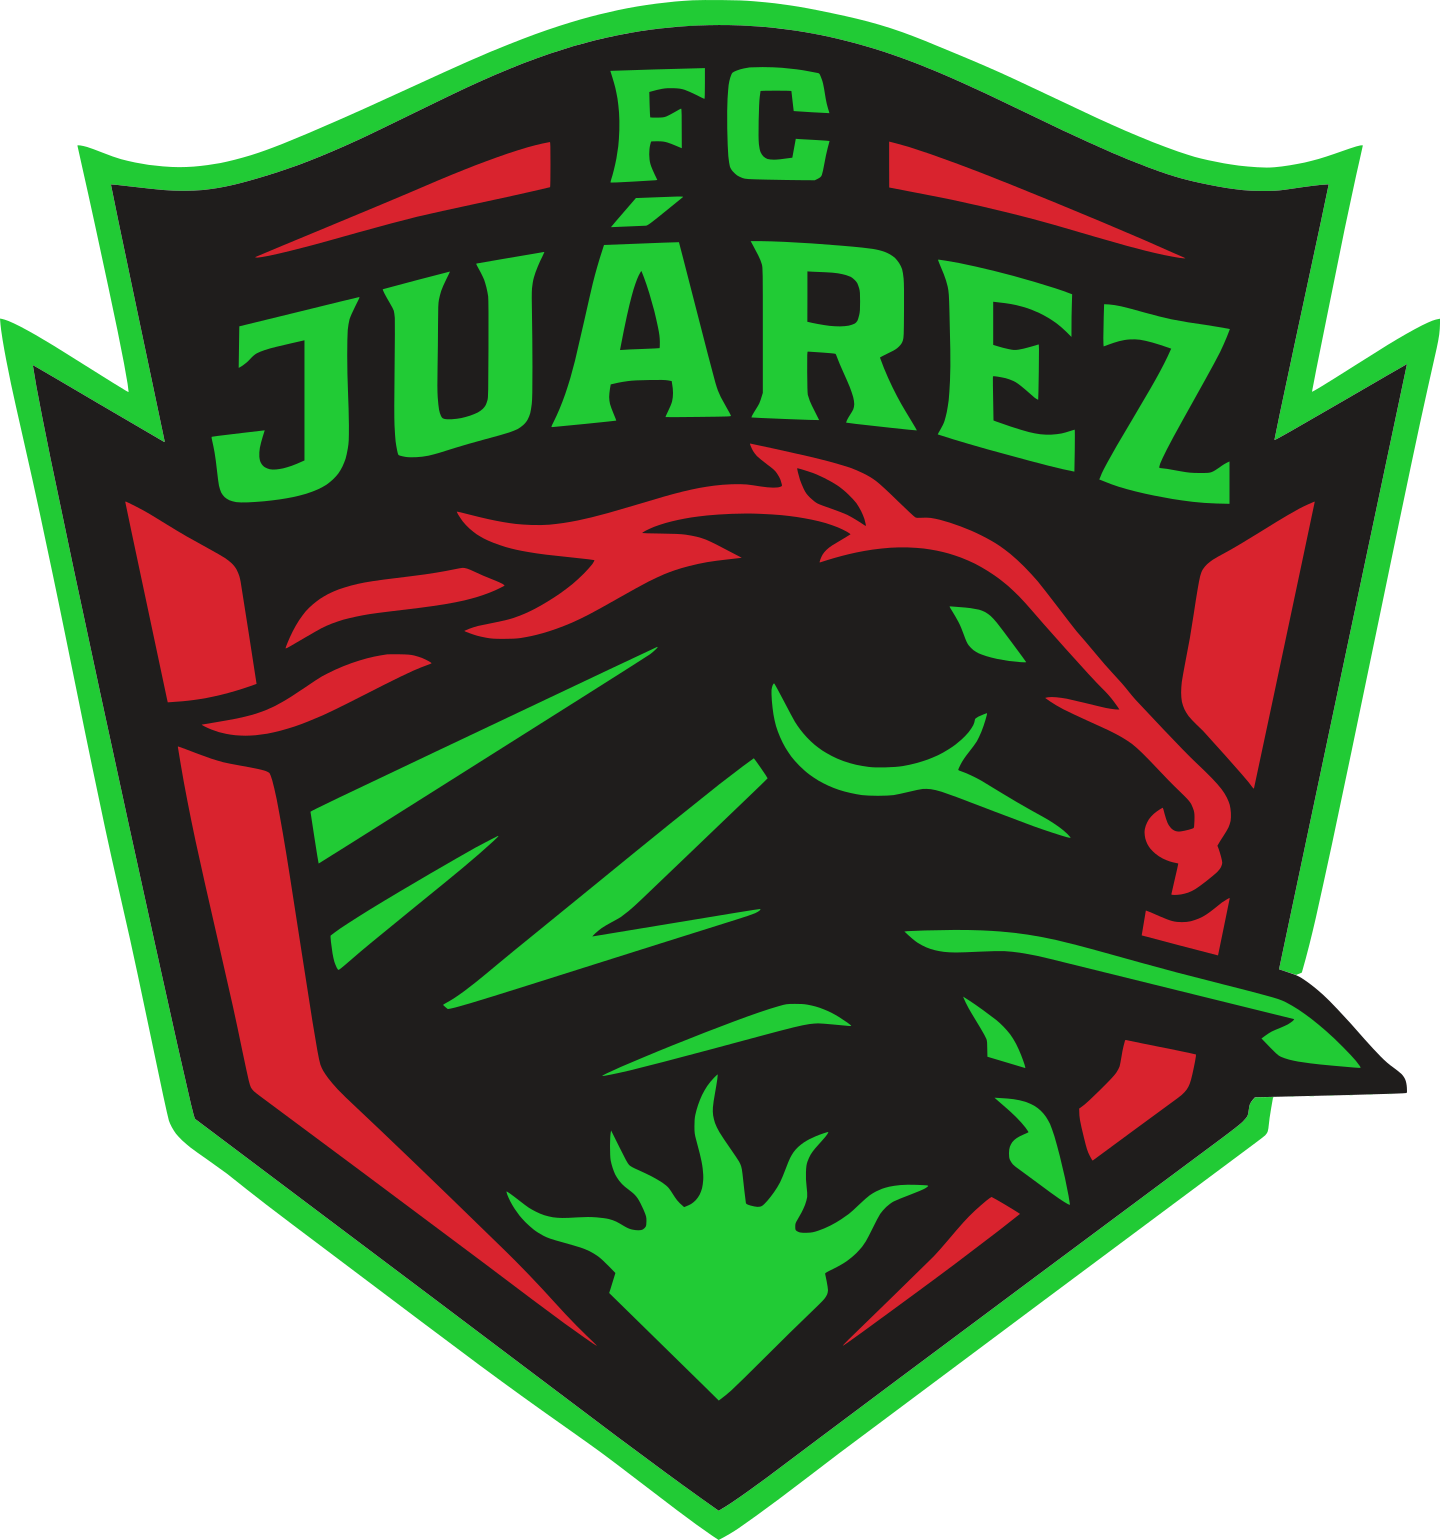 fc juarez logo 2 - FC Juárez Logo